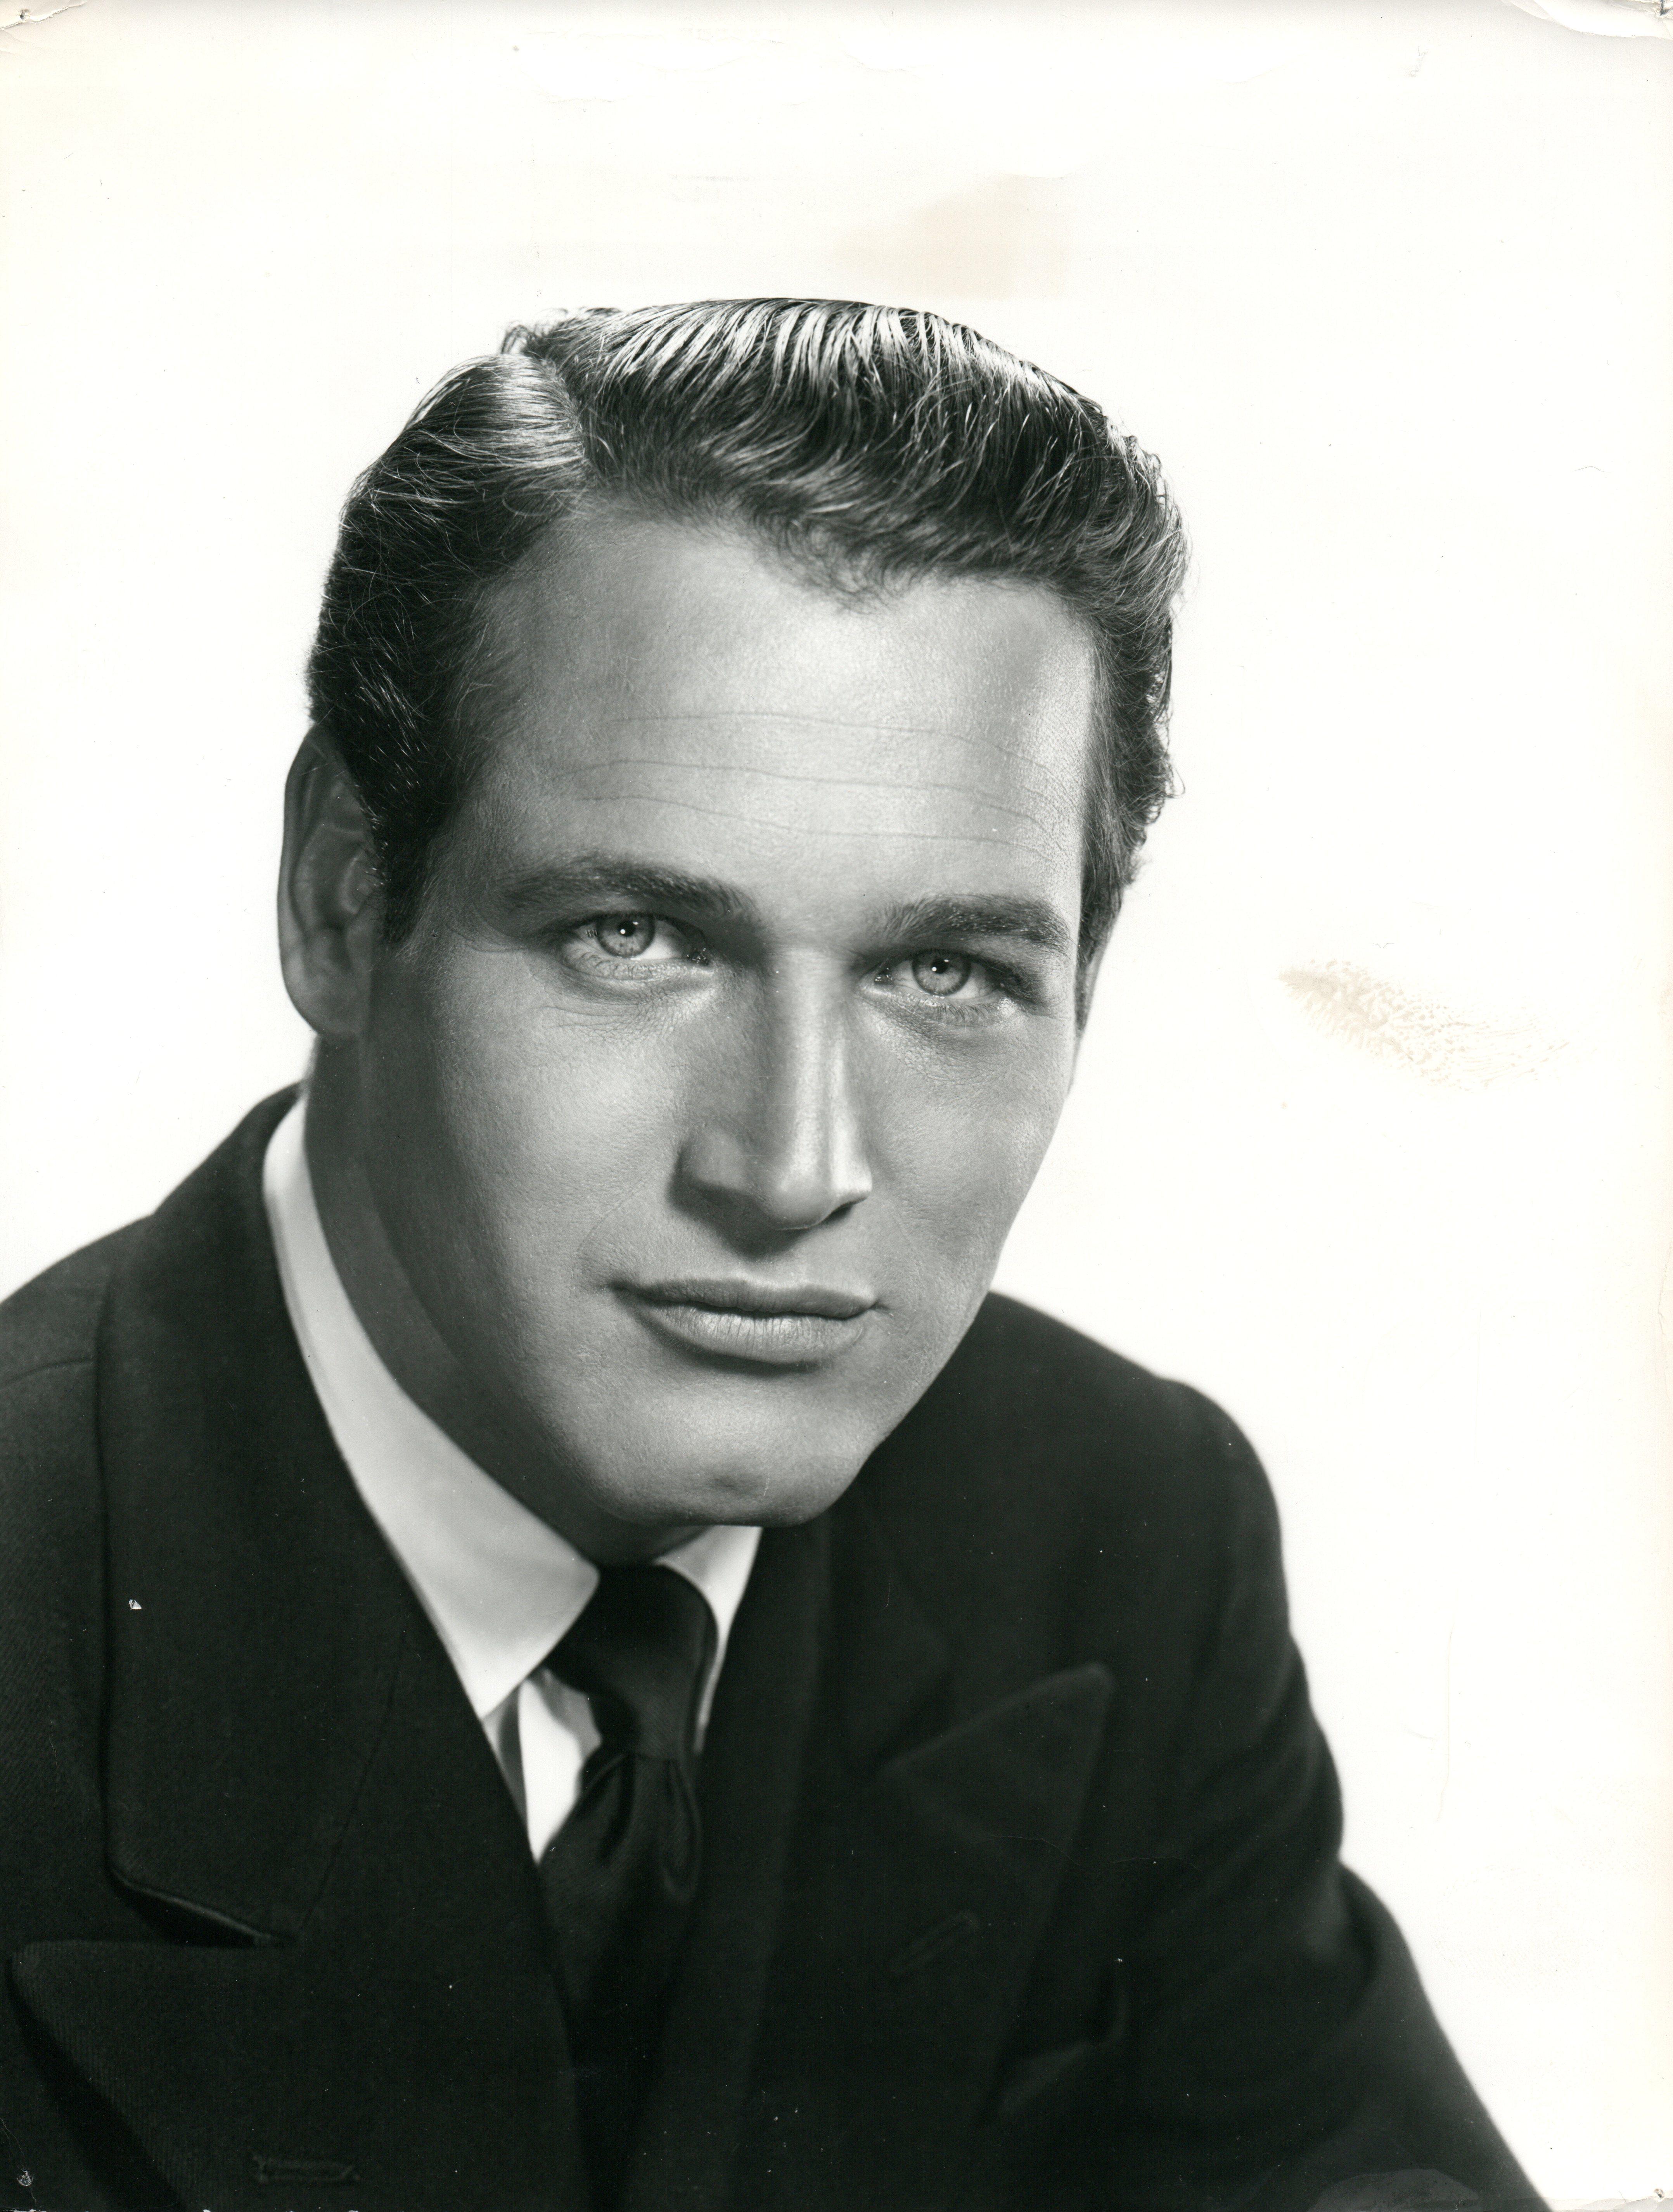 Unknown Portrait Photograph - Classical Portrait of Paul Newman Vintage Original Photograph